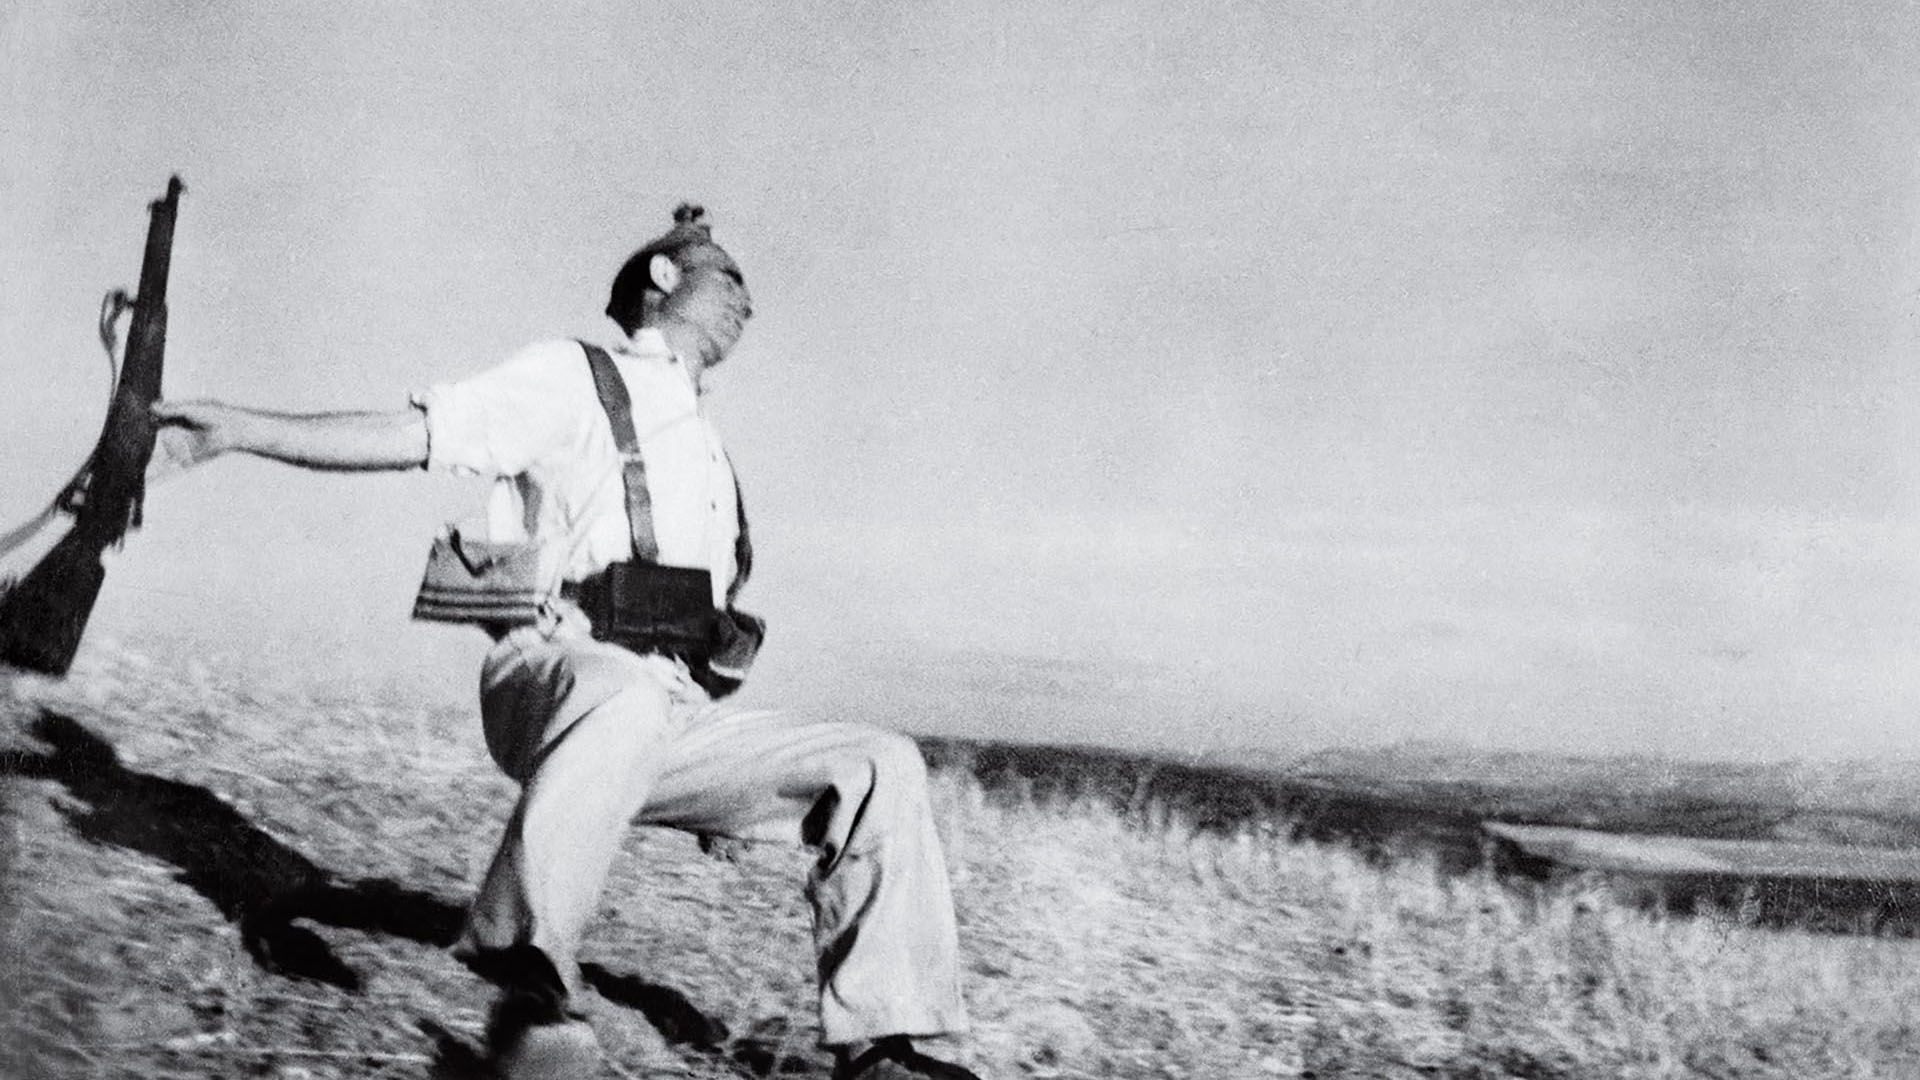 “Muerte de un miliciano”, una de las fotos más emblemáticas y controvertidas de Robert Capa